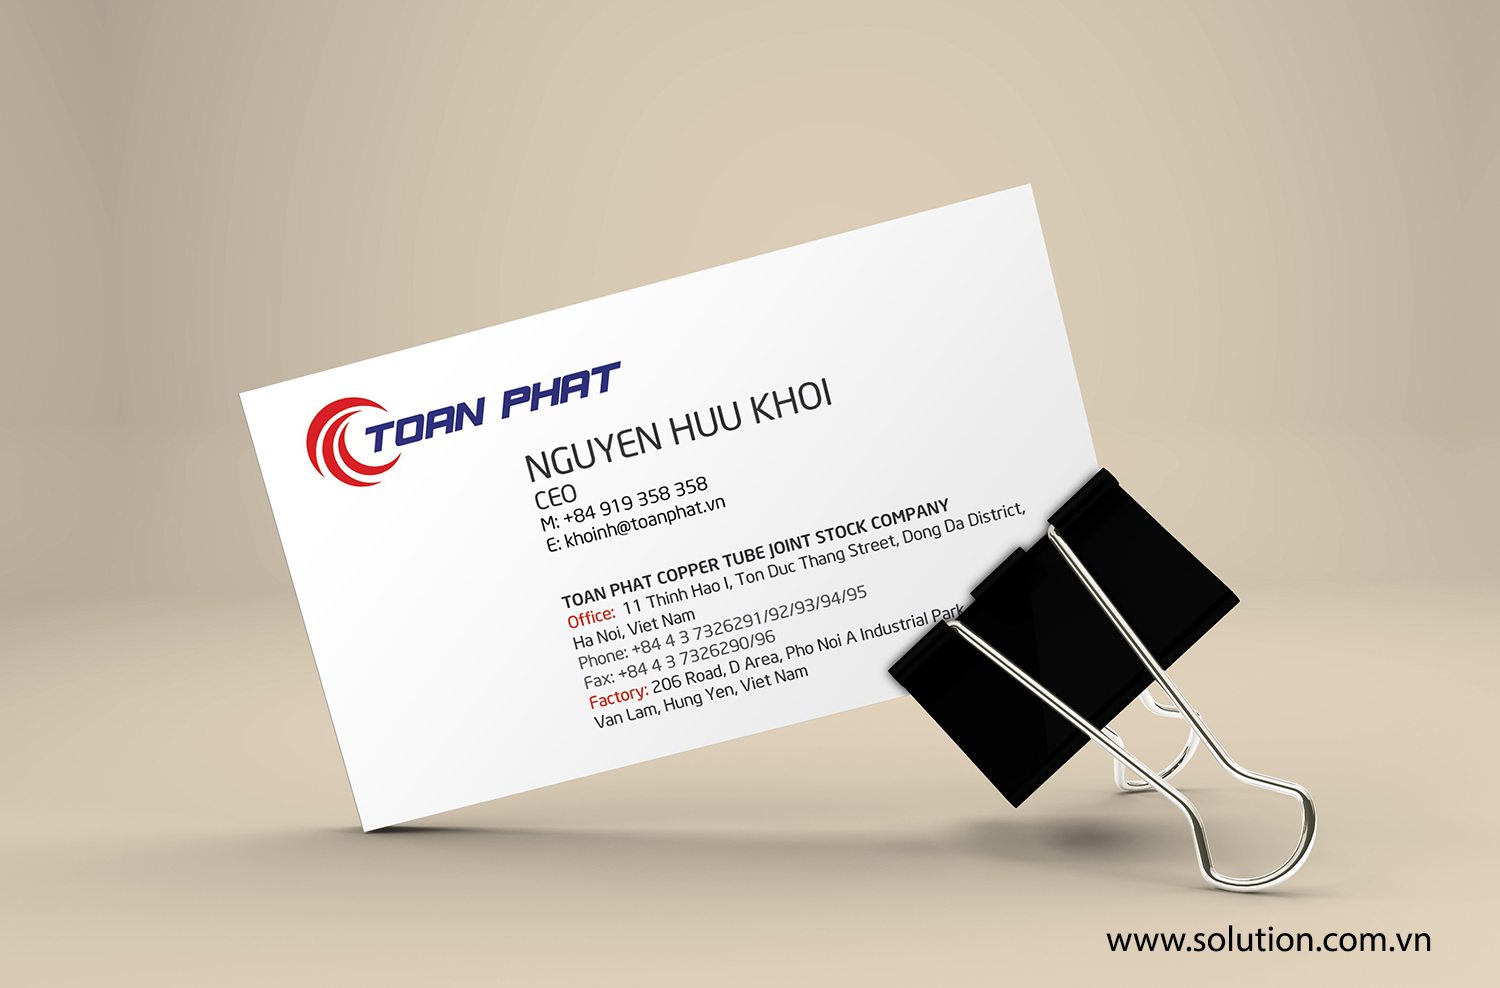 Mẫu thiết kế name-card trong bộ nhận diện thương hiệu công ty Toàn Phát